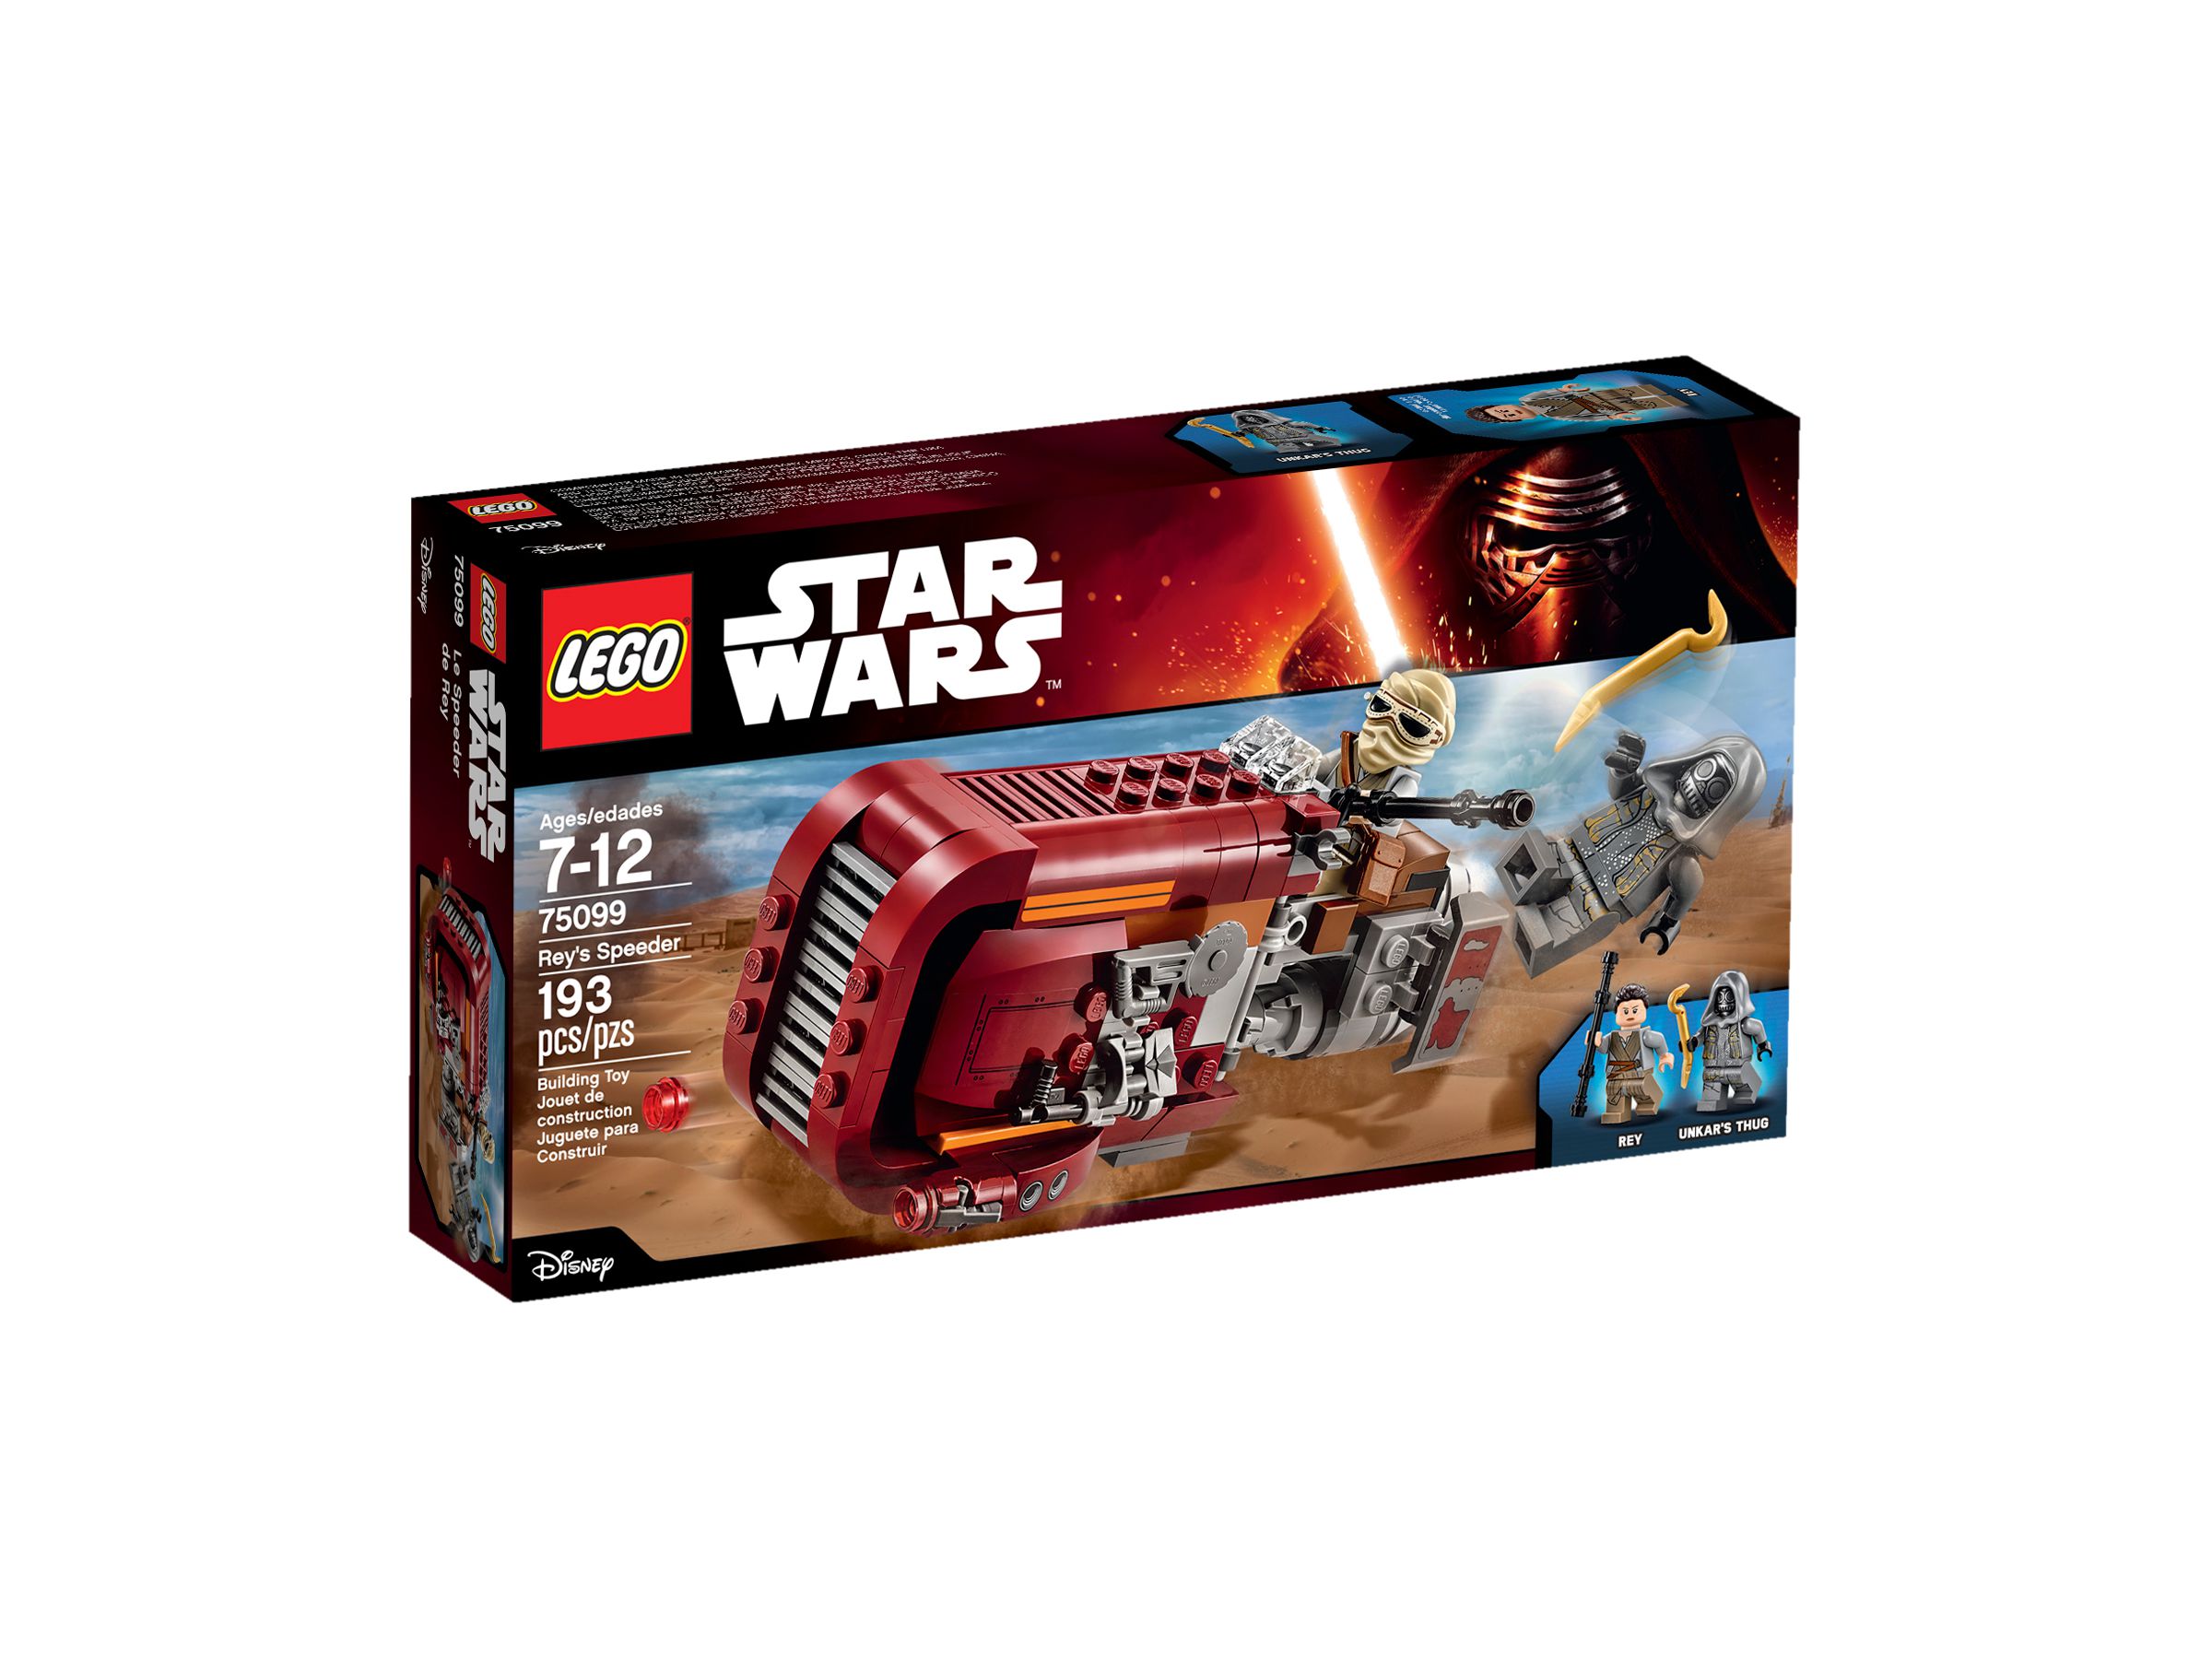 LEGO Star Wars 75099 Rey's Speeder™ LEGO_75099_alt1.jpg